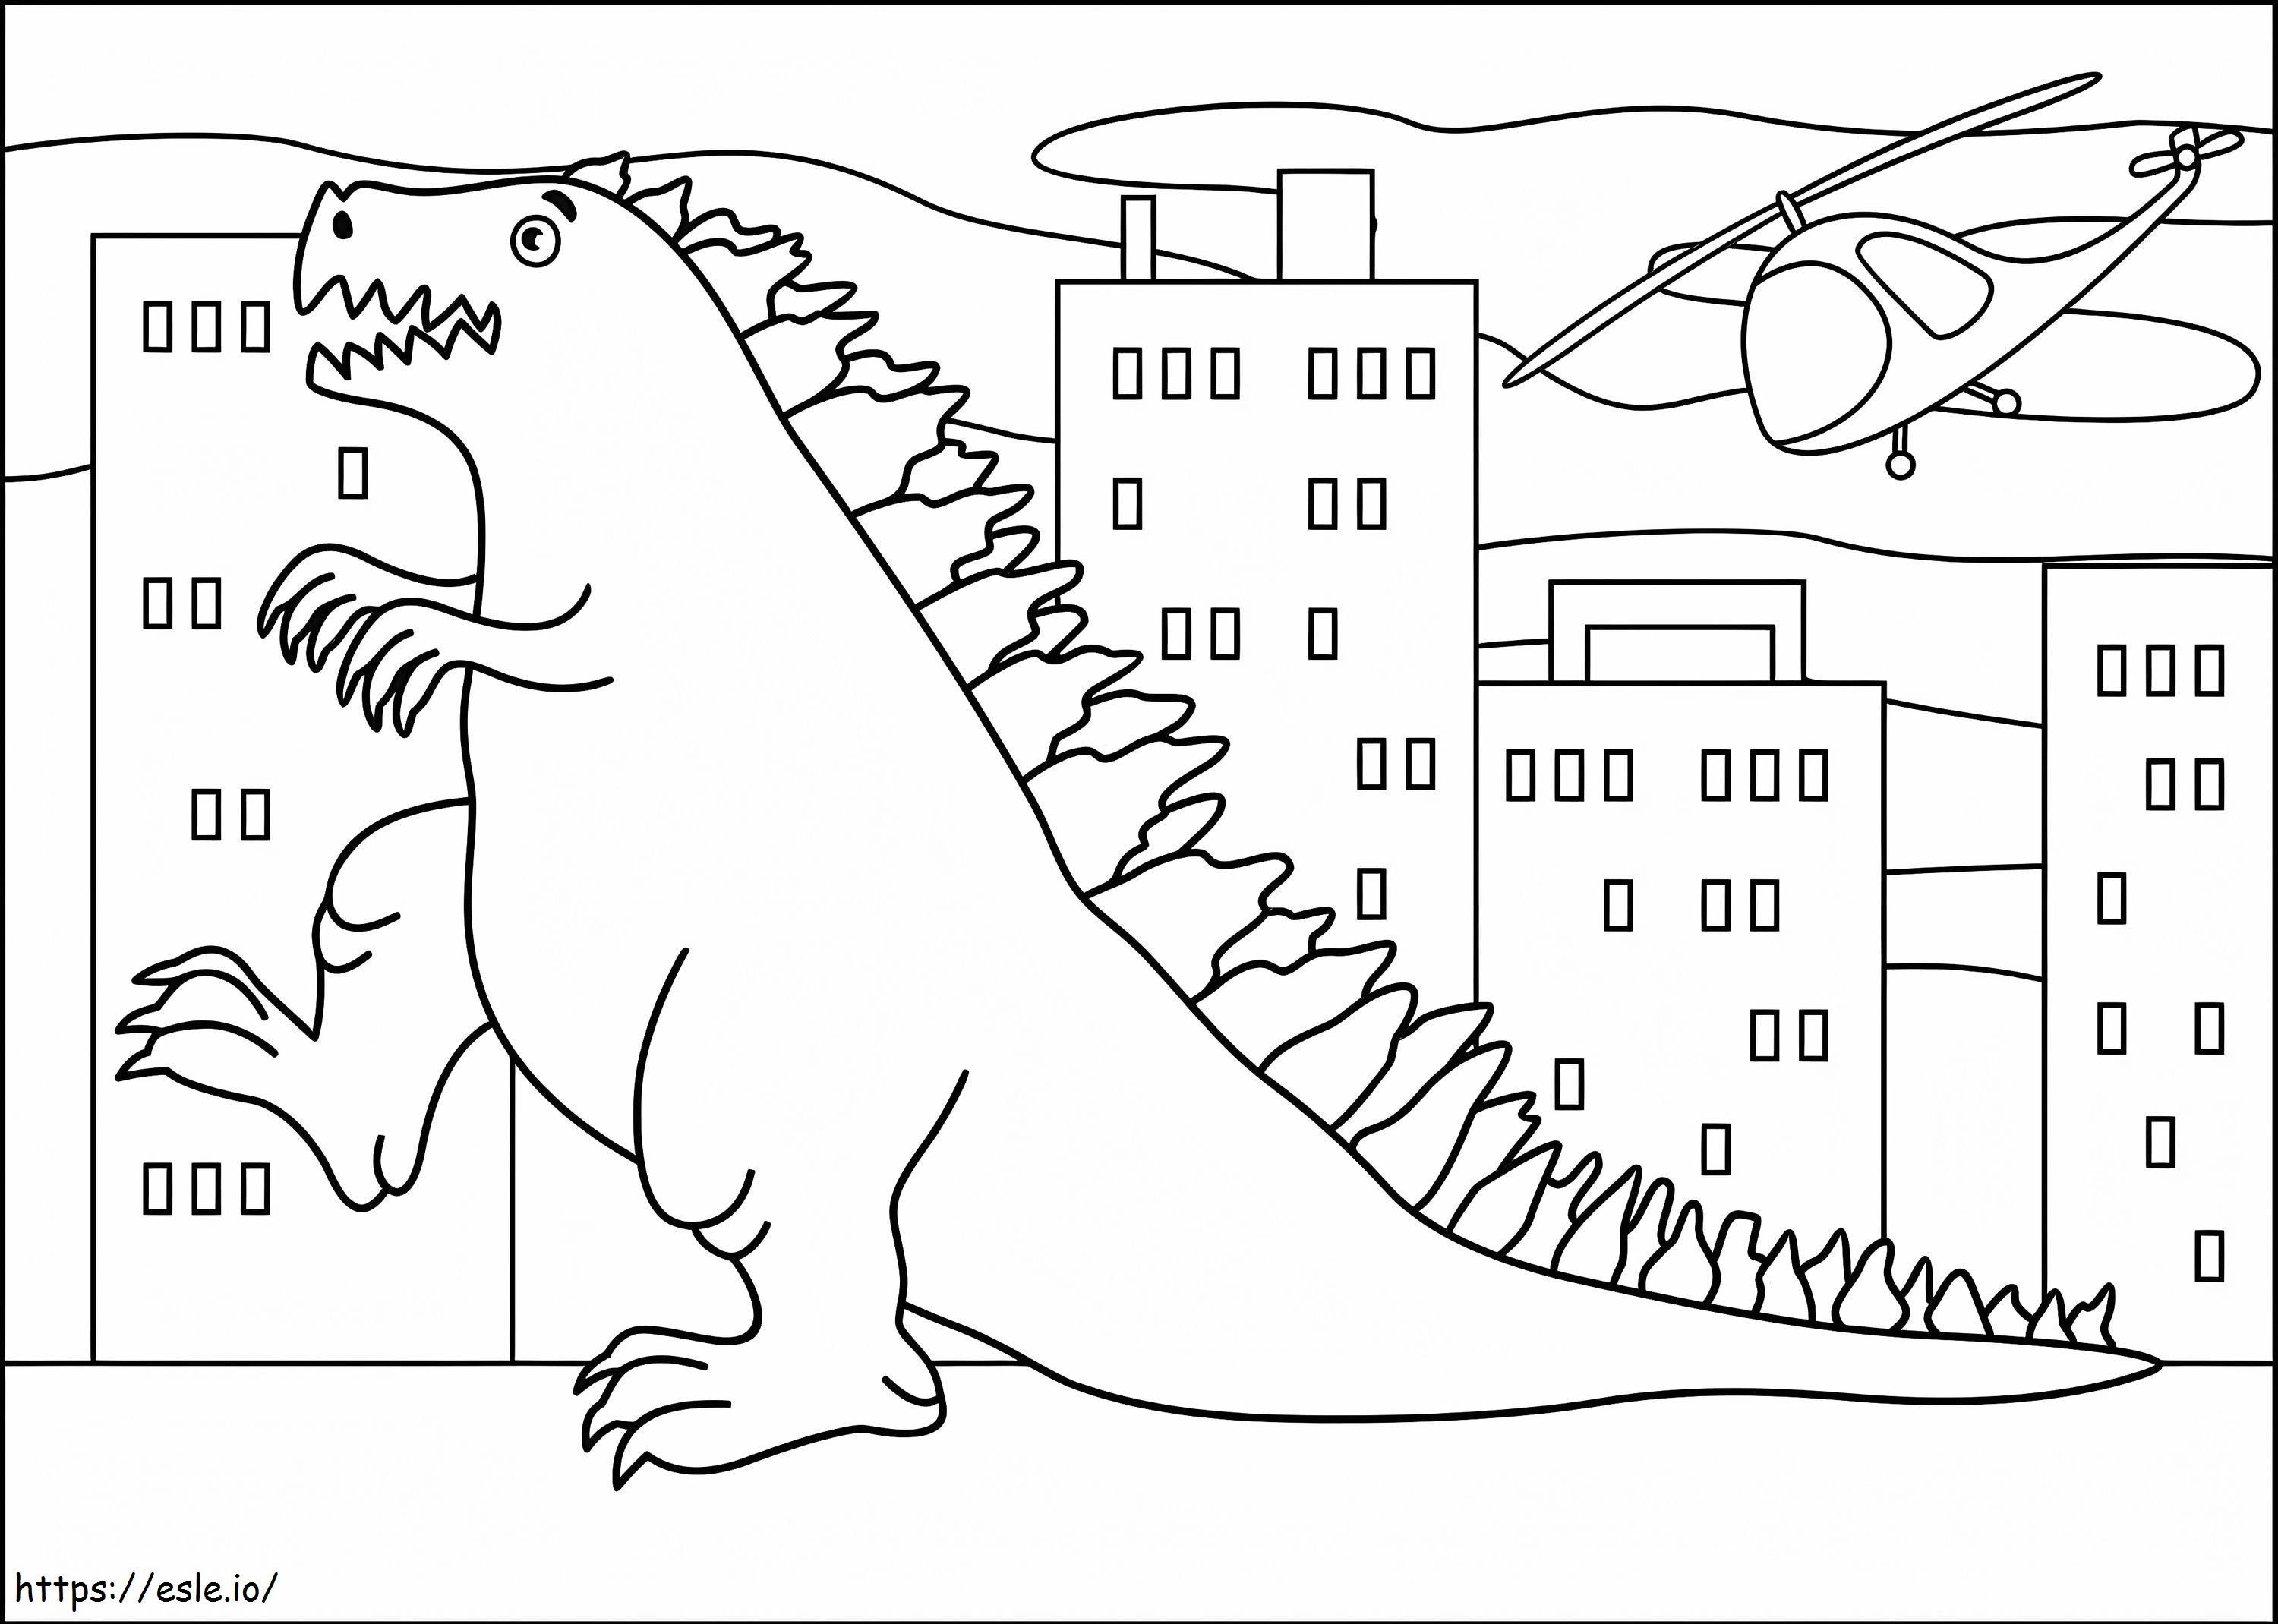 Godzilla-Zeichnung ausmalbilder